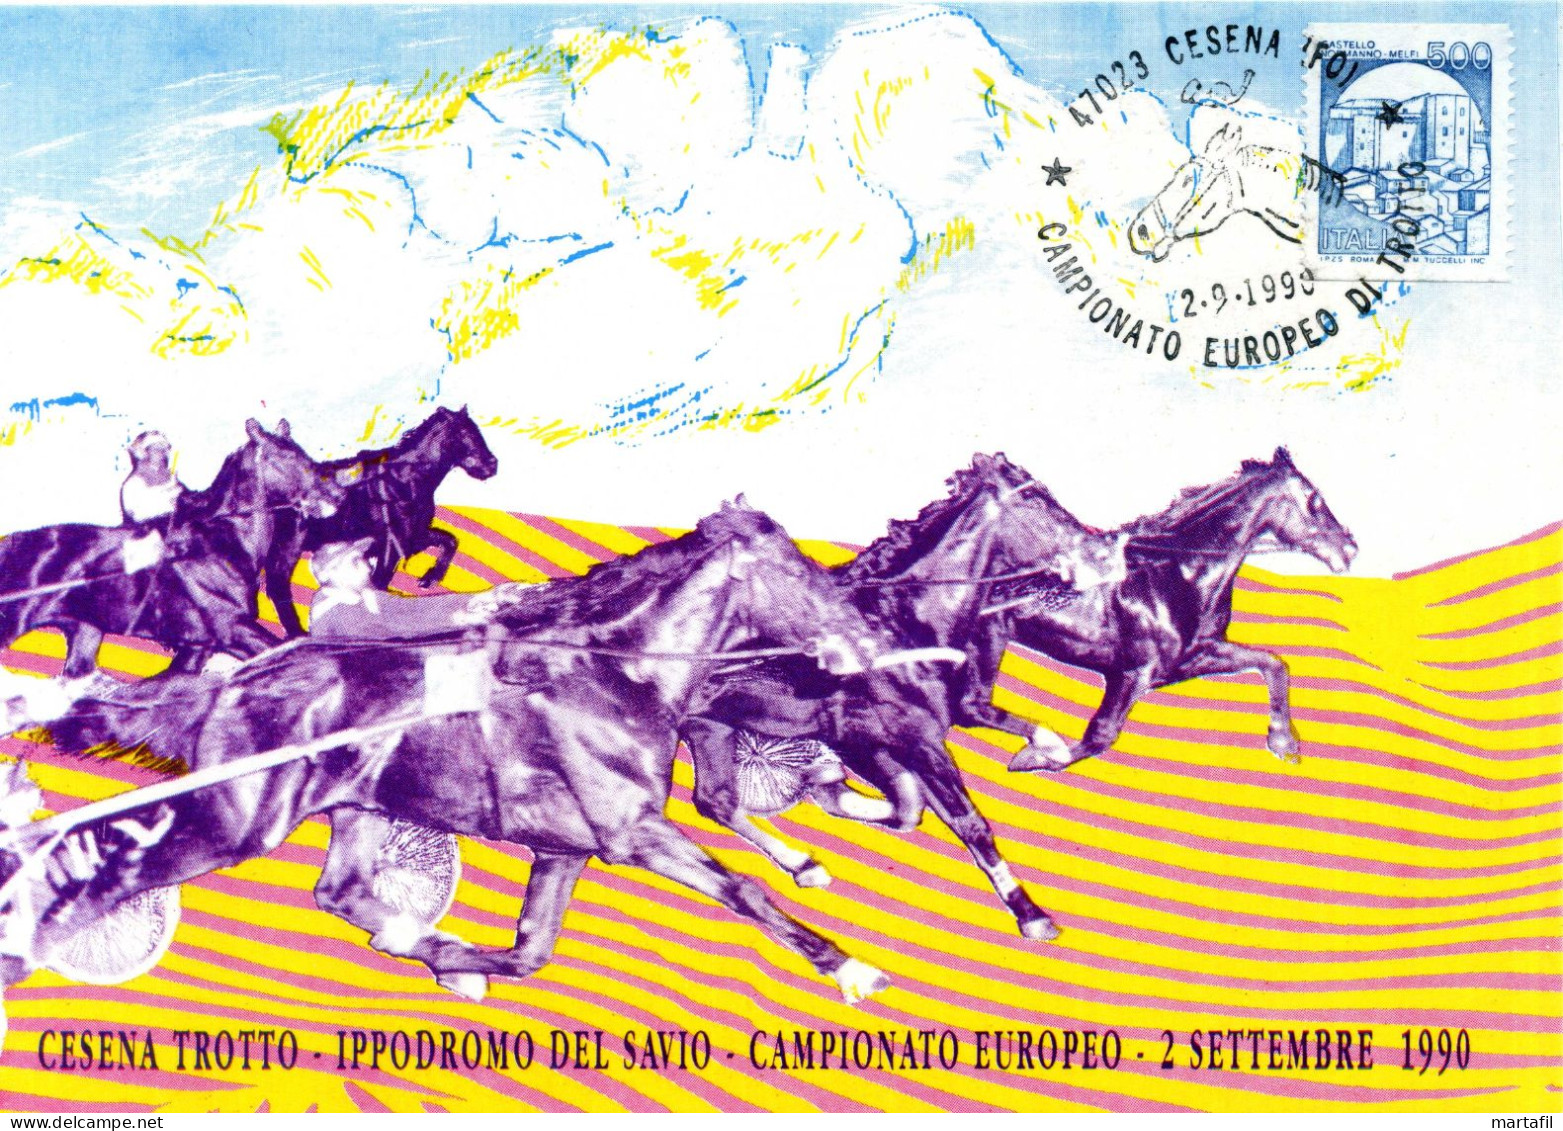 TEMATICA CAVALLI - HORSES - Cartolina, Campionato Europeo Di Trotto, Sport, Cesena - Pferde